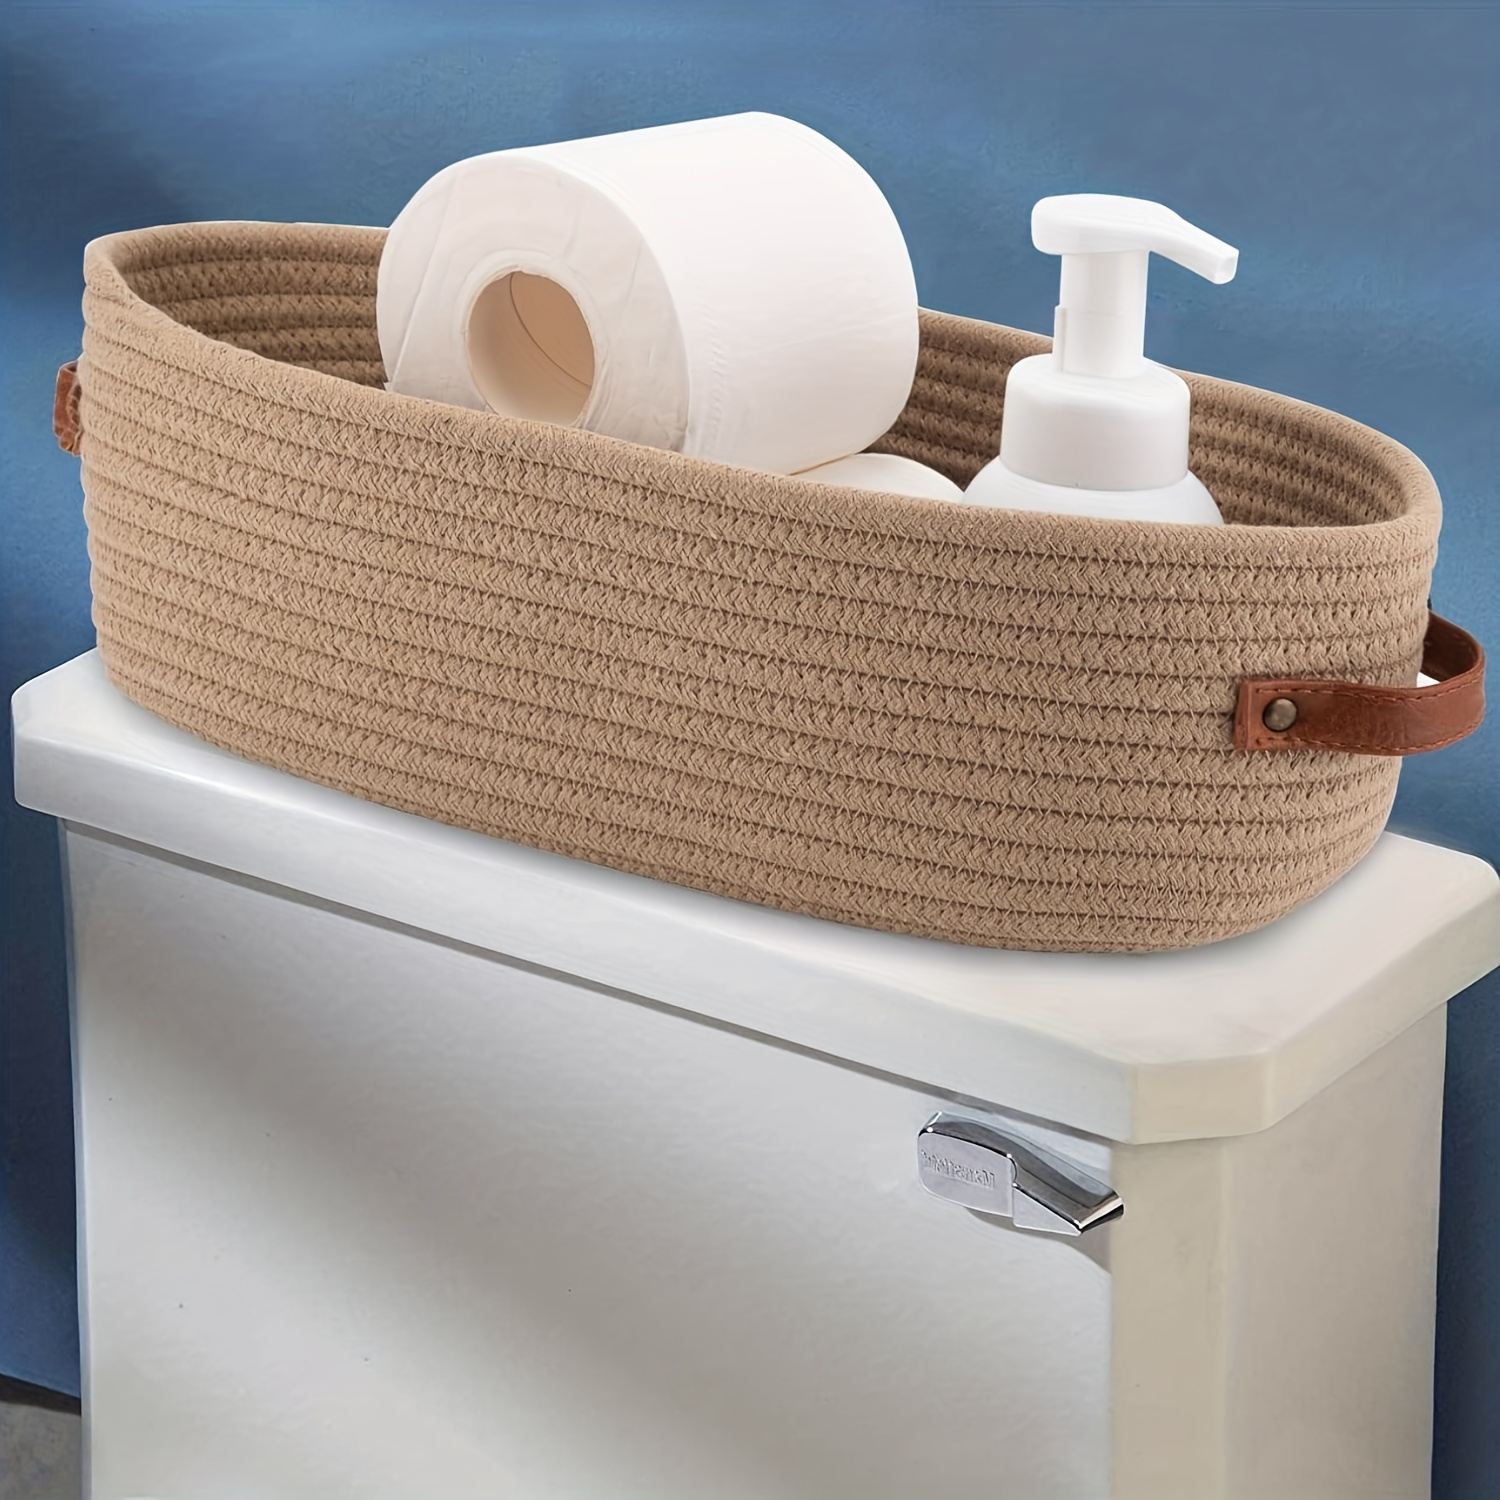 Storage for Bathroom Handmade From Solid Wood Organizer for Toilet Paper  Rolls -   Porta papel higiênico de madeira, Decoração do banheiro,  Porta papel higiênico rústico